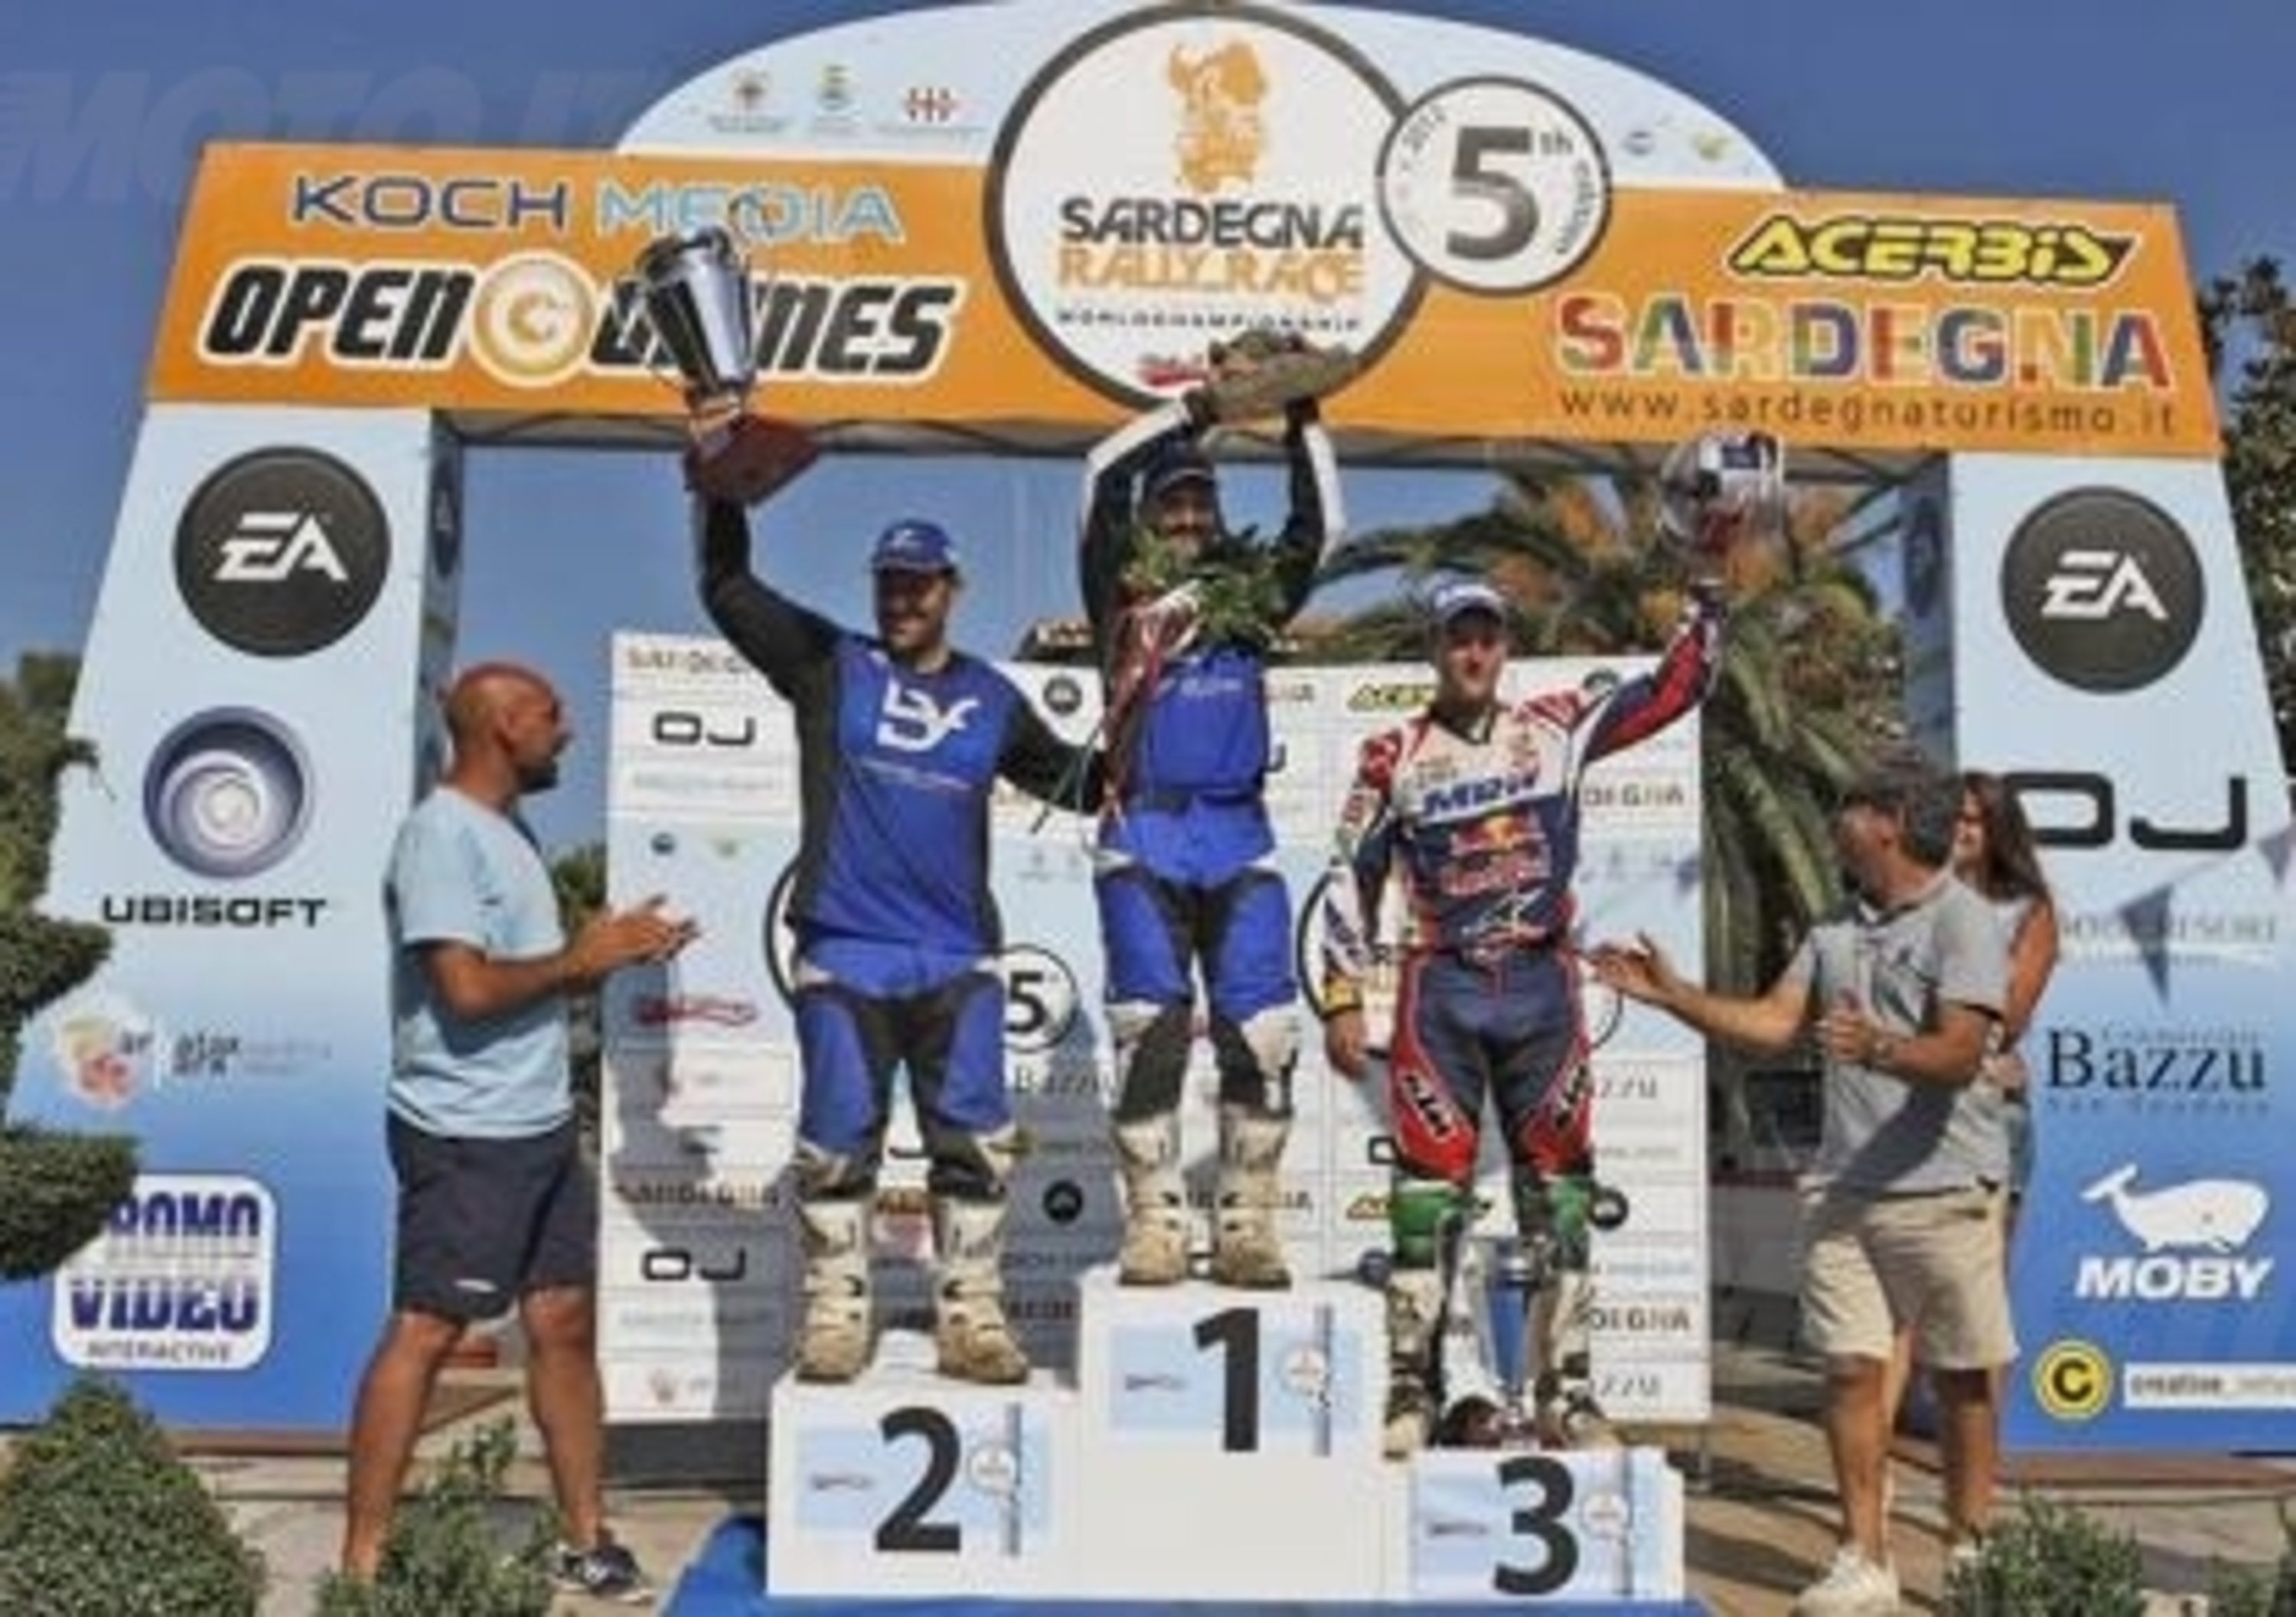 Sardegna Rally Race: Jordi Viladoms conquista la quinta edizione